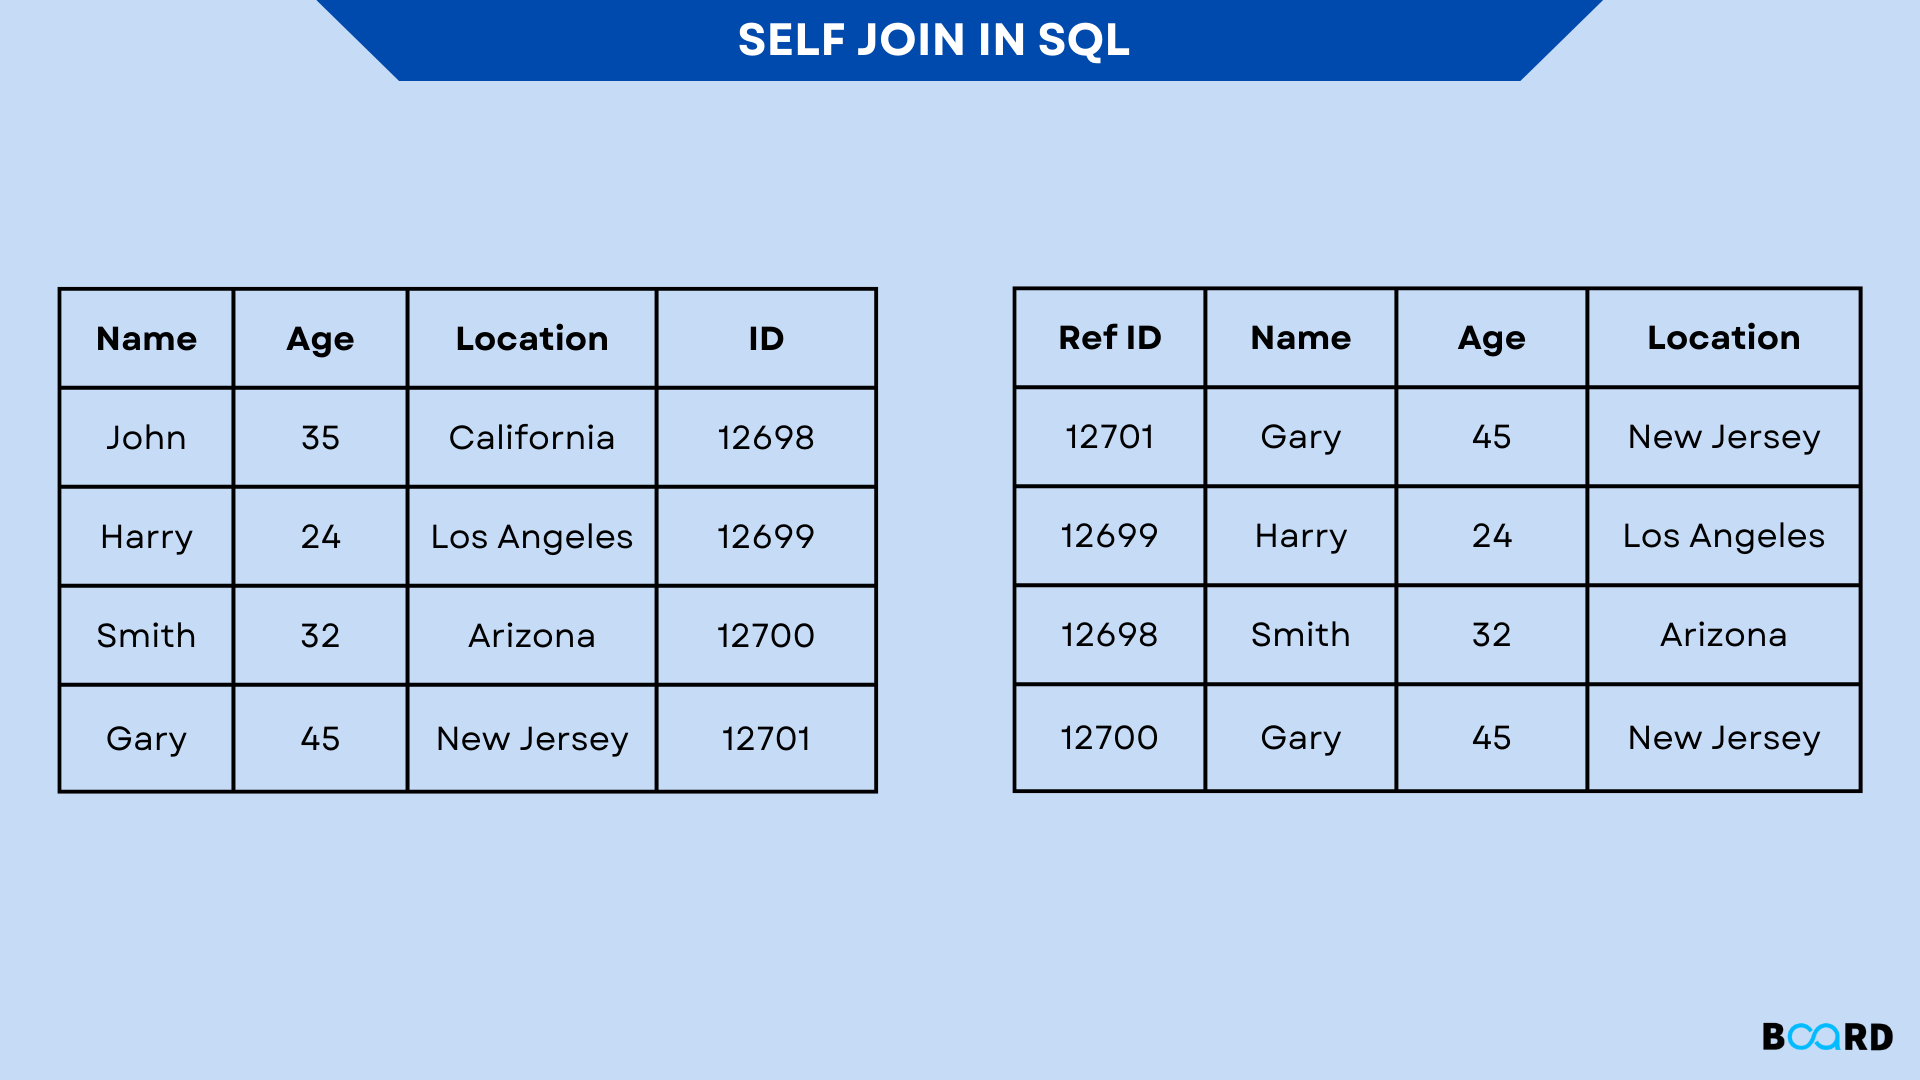 SELF JOIN IN SQL